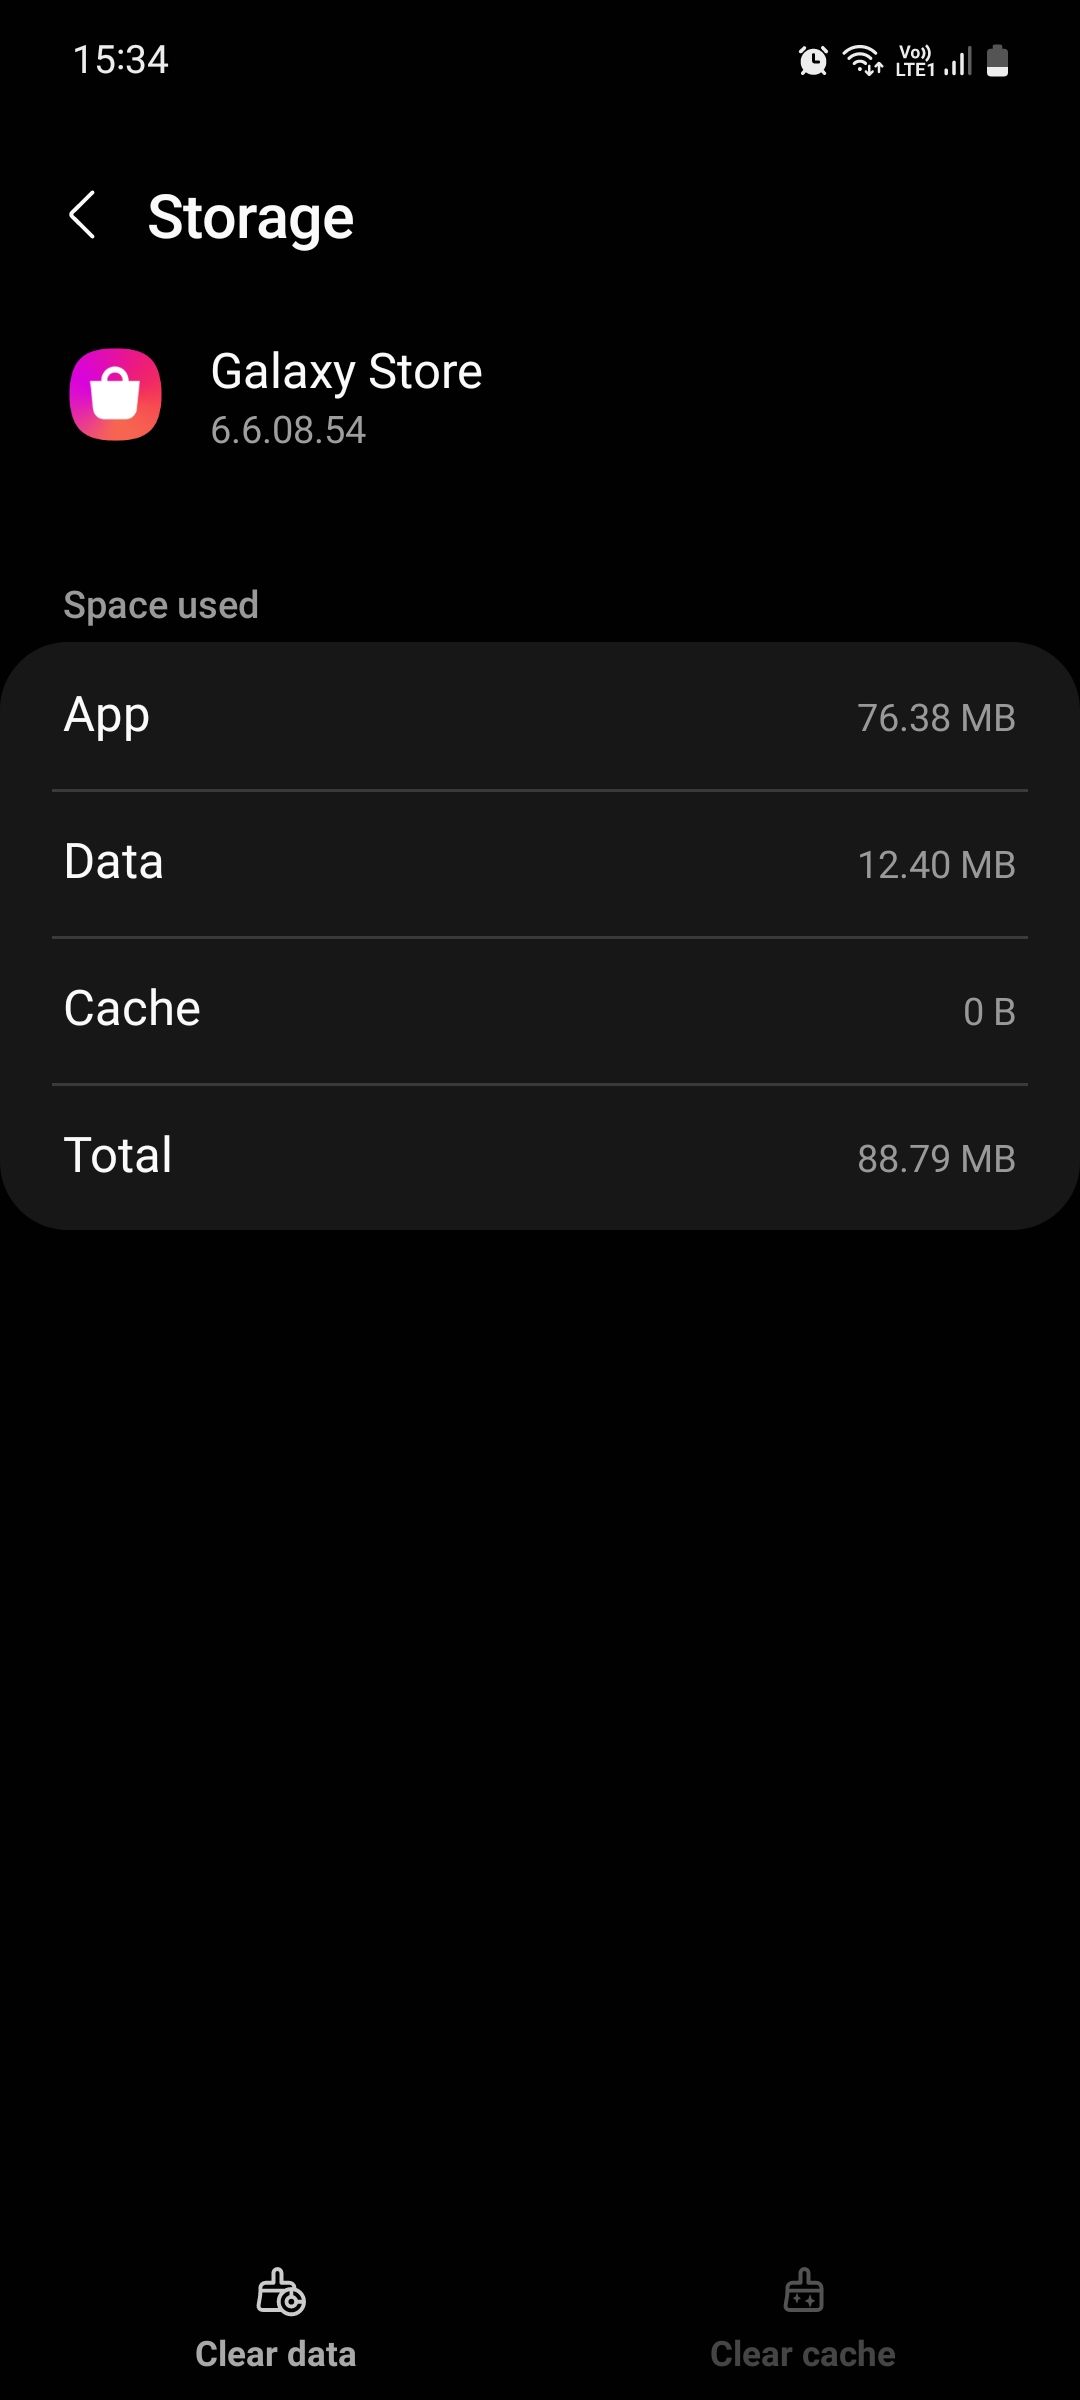 Samsung Galaxy Store app storage